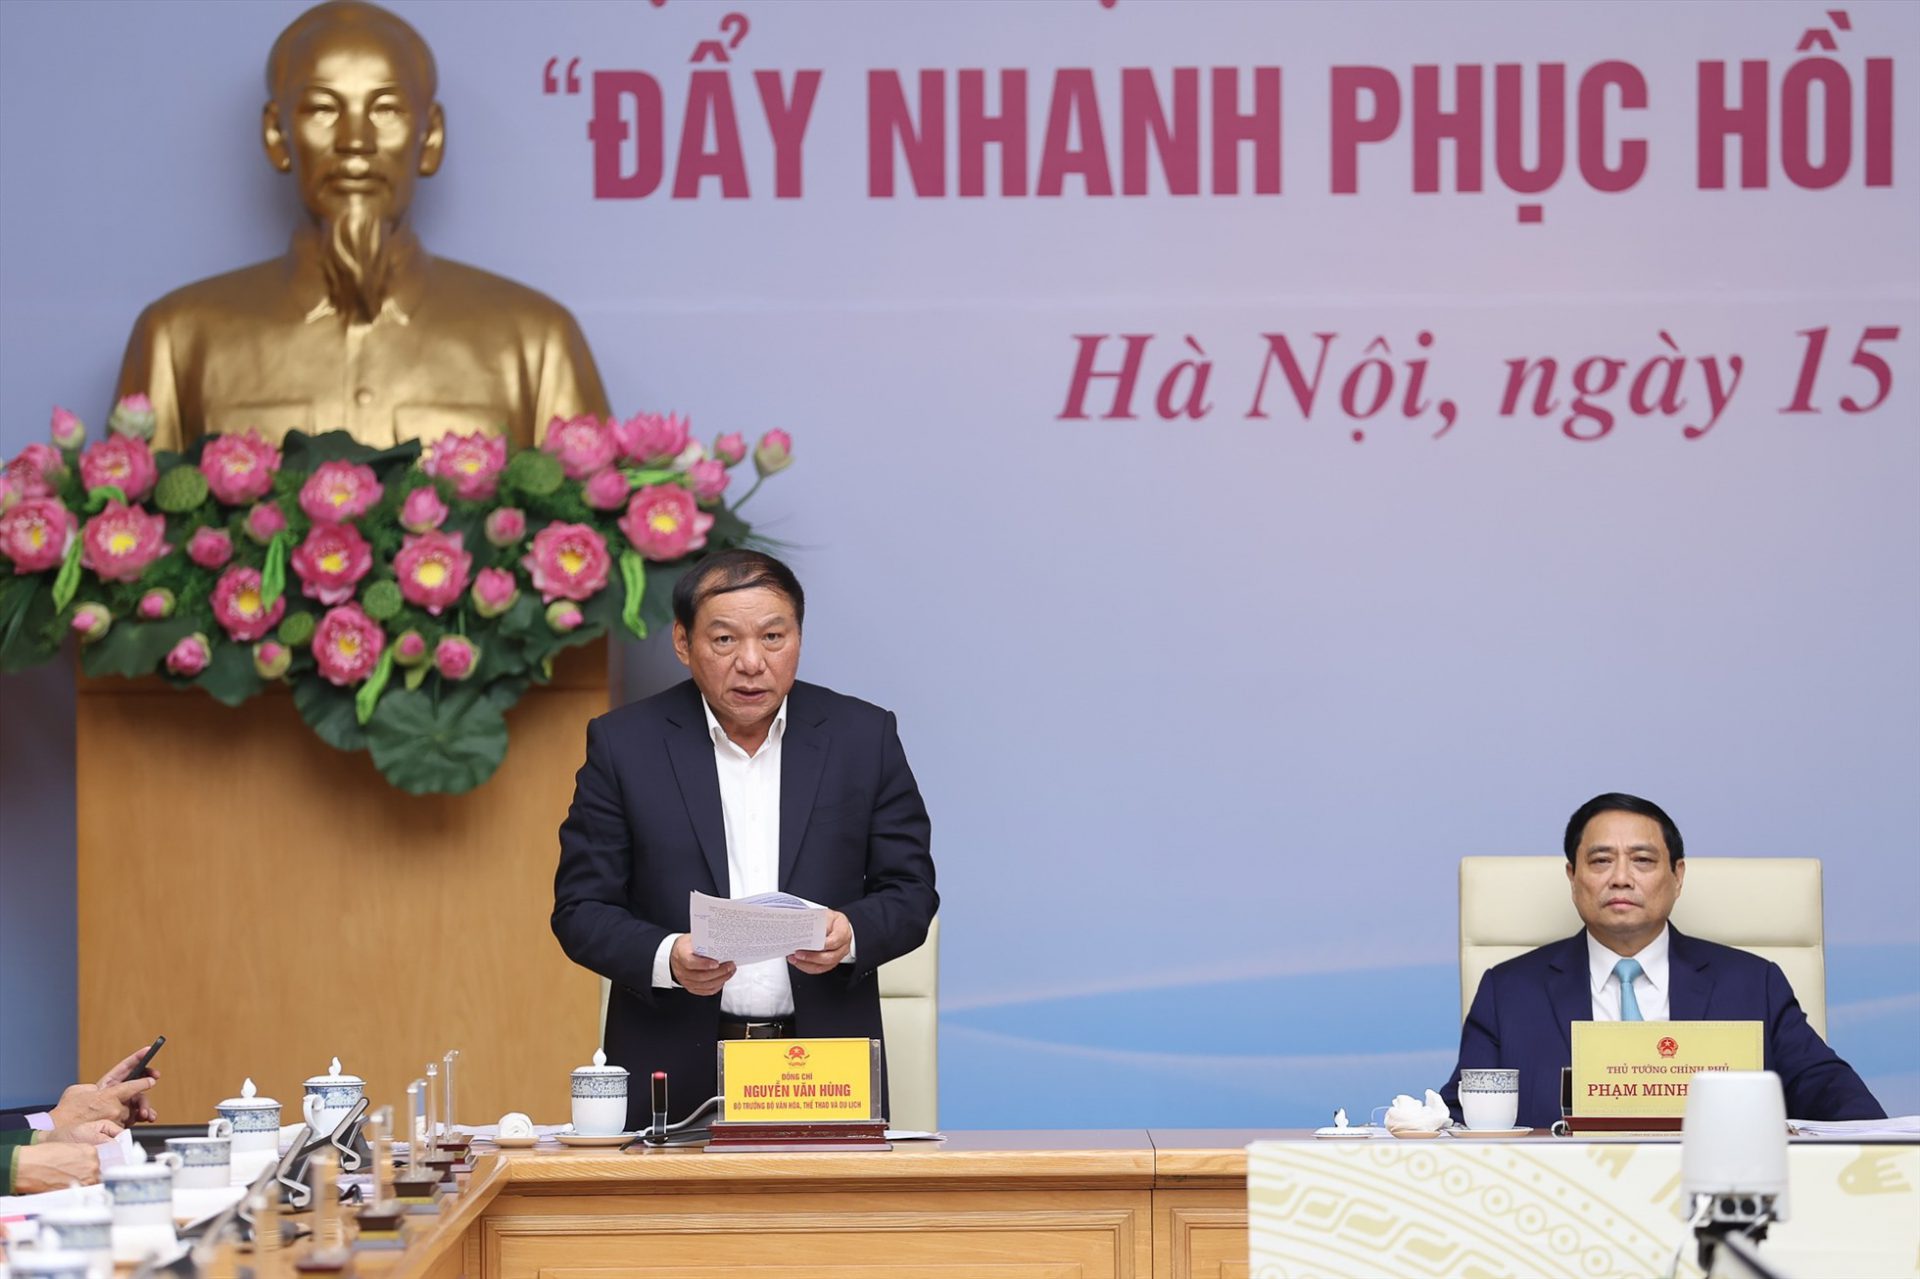 Bộ trưởng Nguyễn Văn Hùng phát biểu trong Hội nghị trực tuyến toàn quốc về du lịch năm 2023 với chủ đề “Đẩy nhanh phục hồi - Tăng tốc phát triển”. Ảnh: VGP